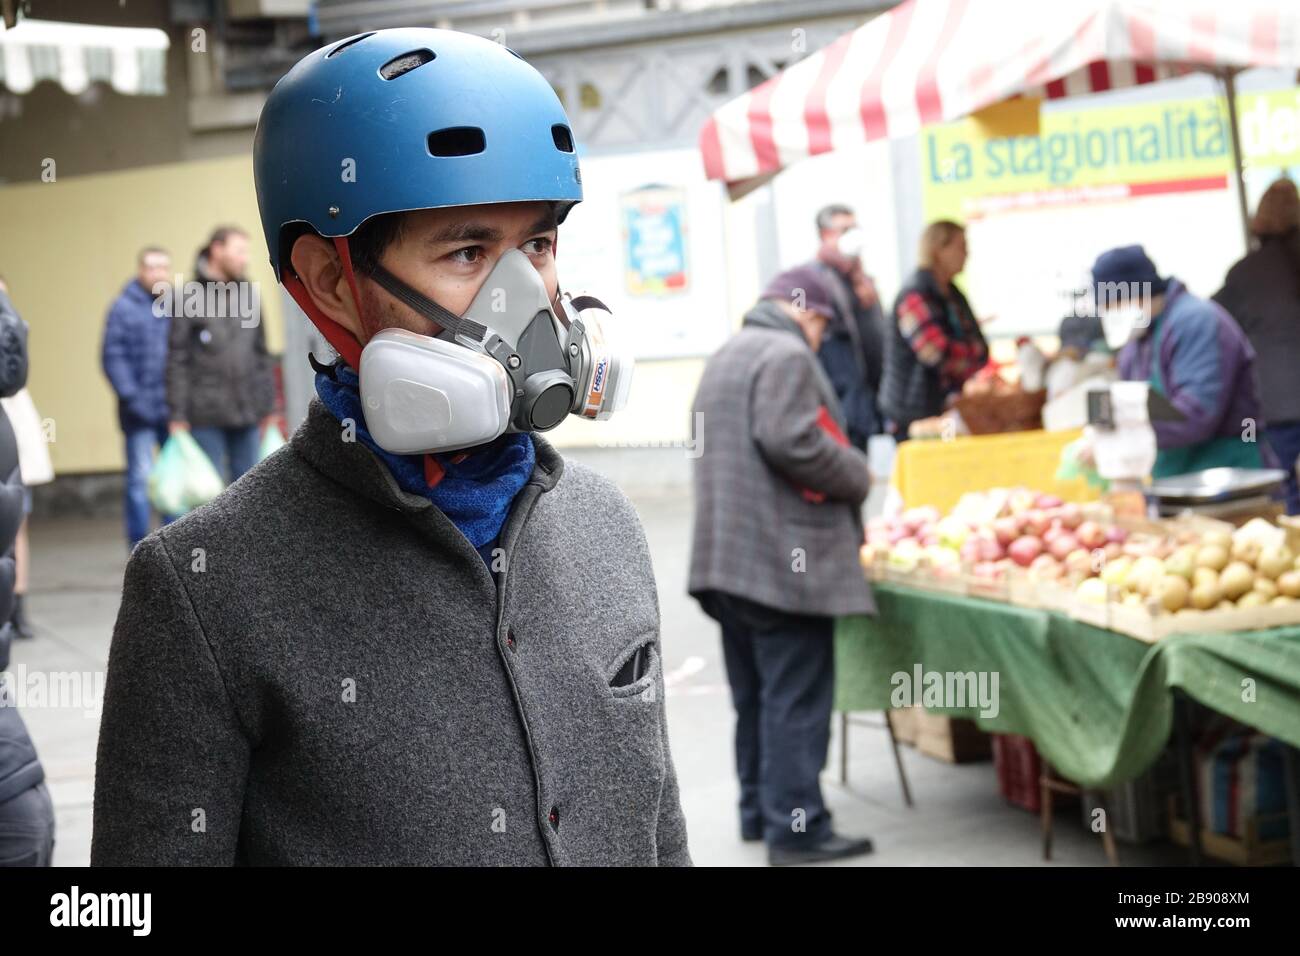 Mann, der Masken trägt, um die Ausbreitung des Coronavirus zu enthalten. Mailand, Italien - März 2020 Stockfoto